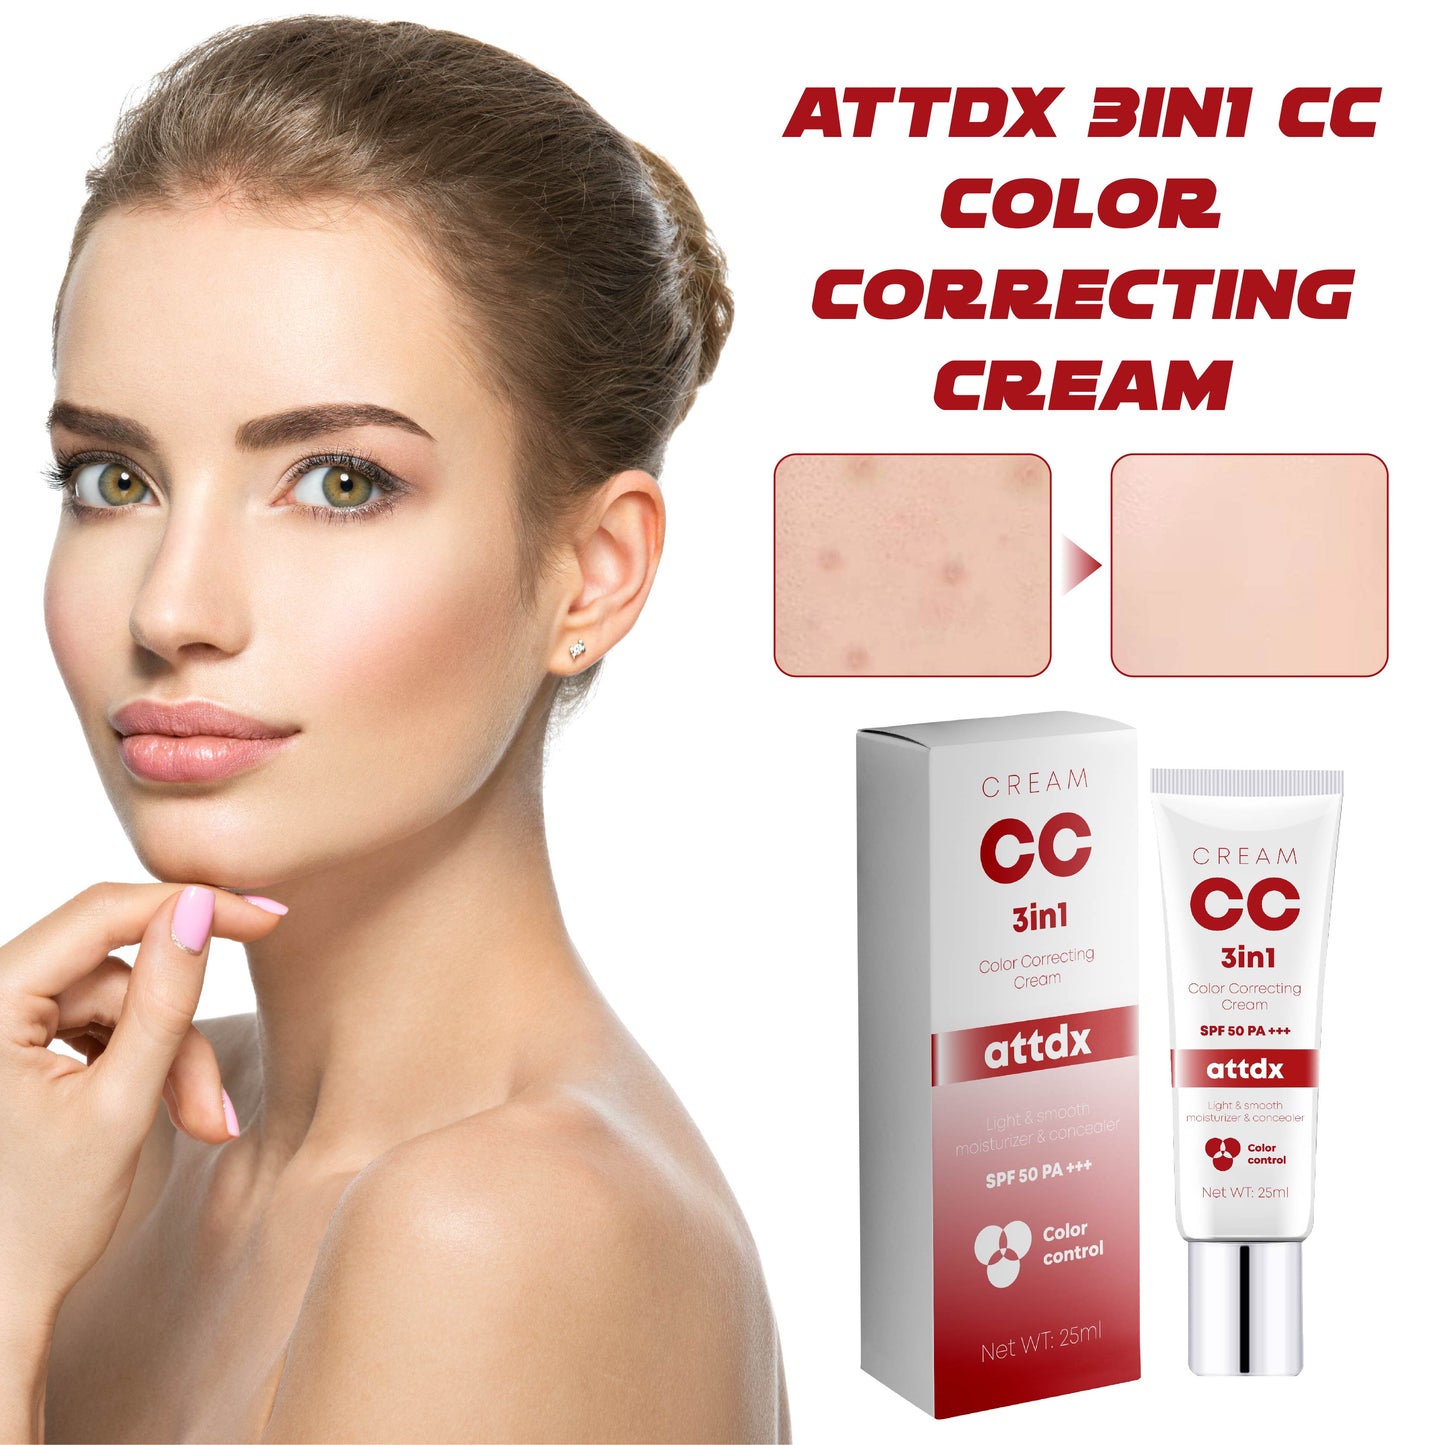 ATTDX 3in1 CC ColorCorrecting Cream